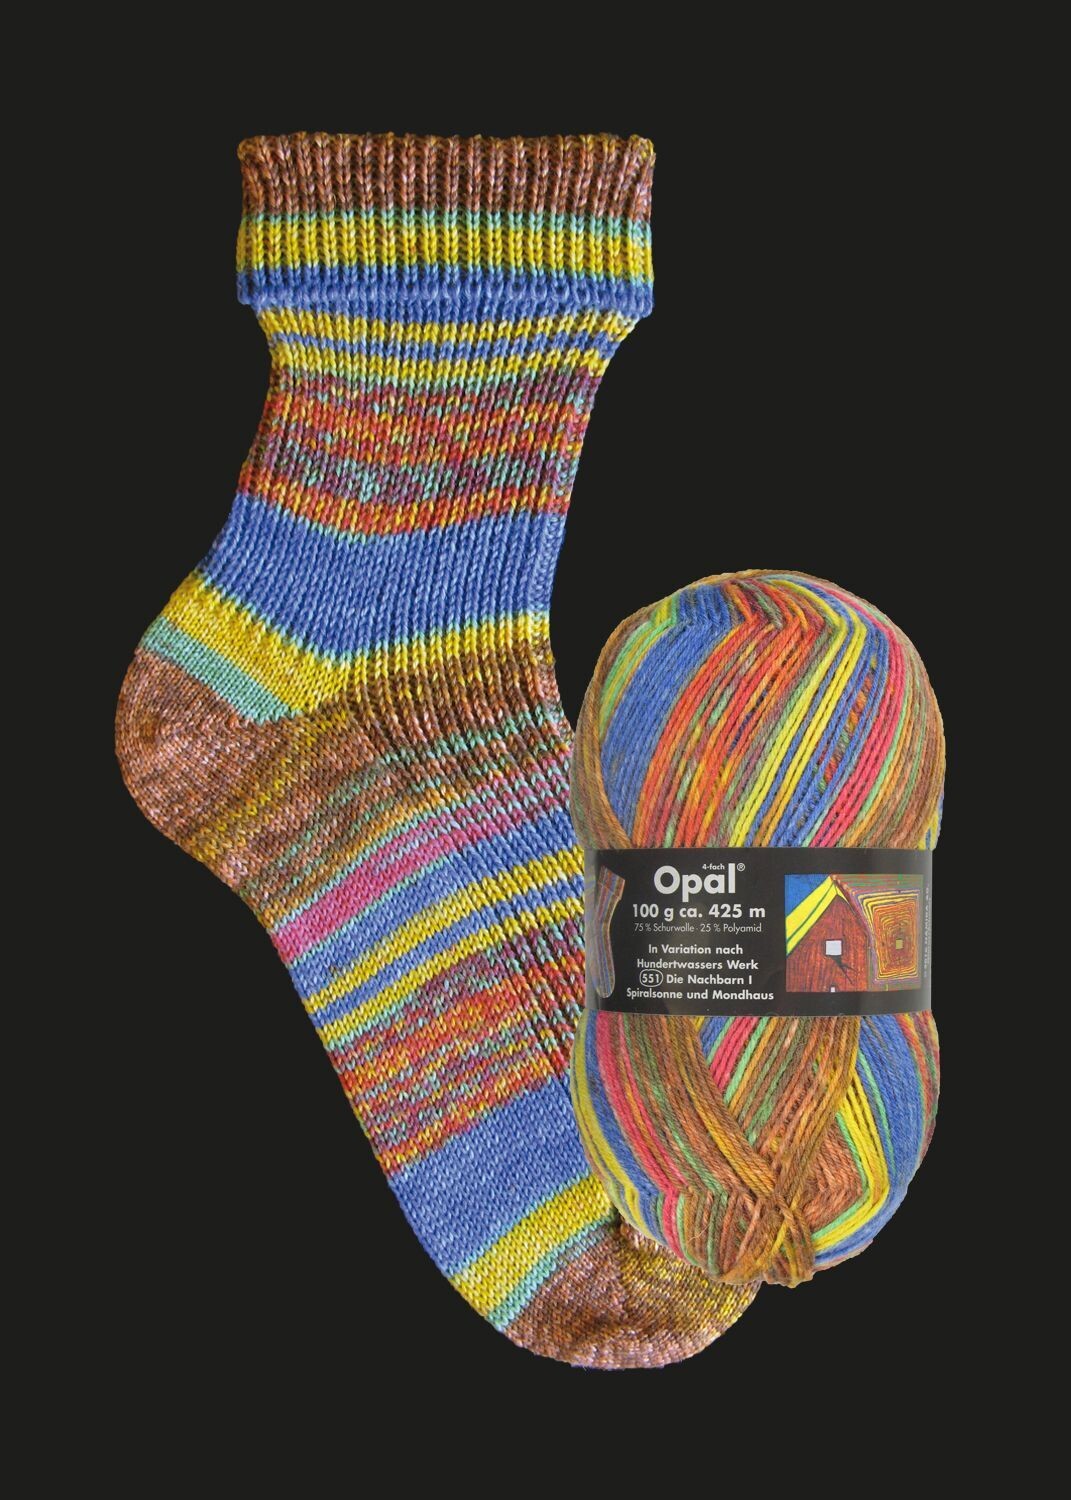 Opal- Serie Hundertwasser-, Farbe: Farbe 2100 - Spiralsonne undMondhaus-